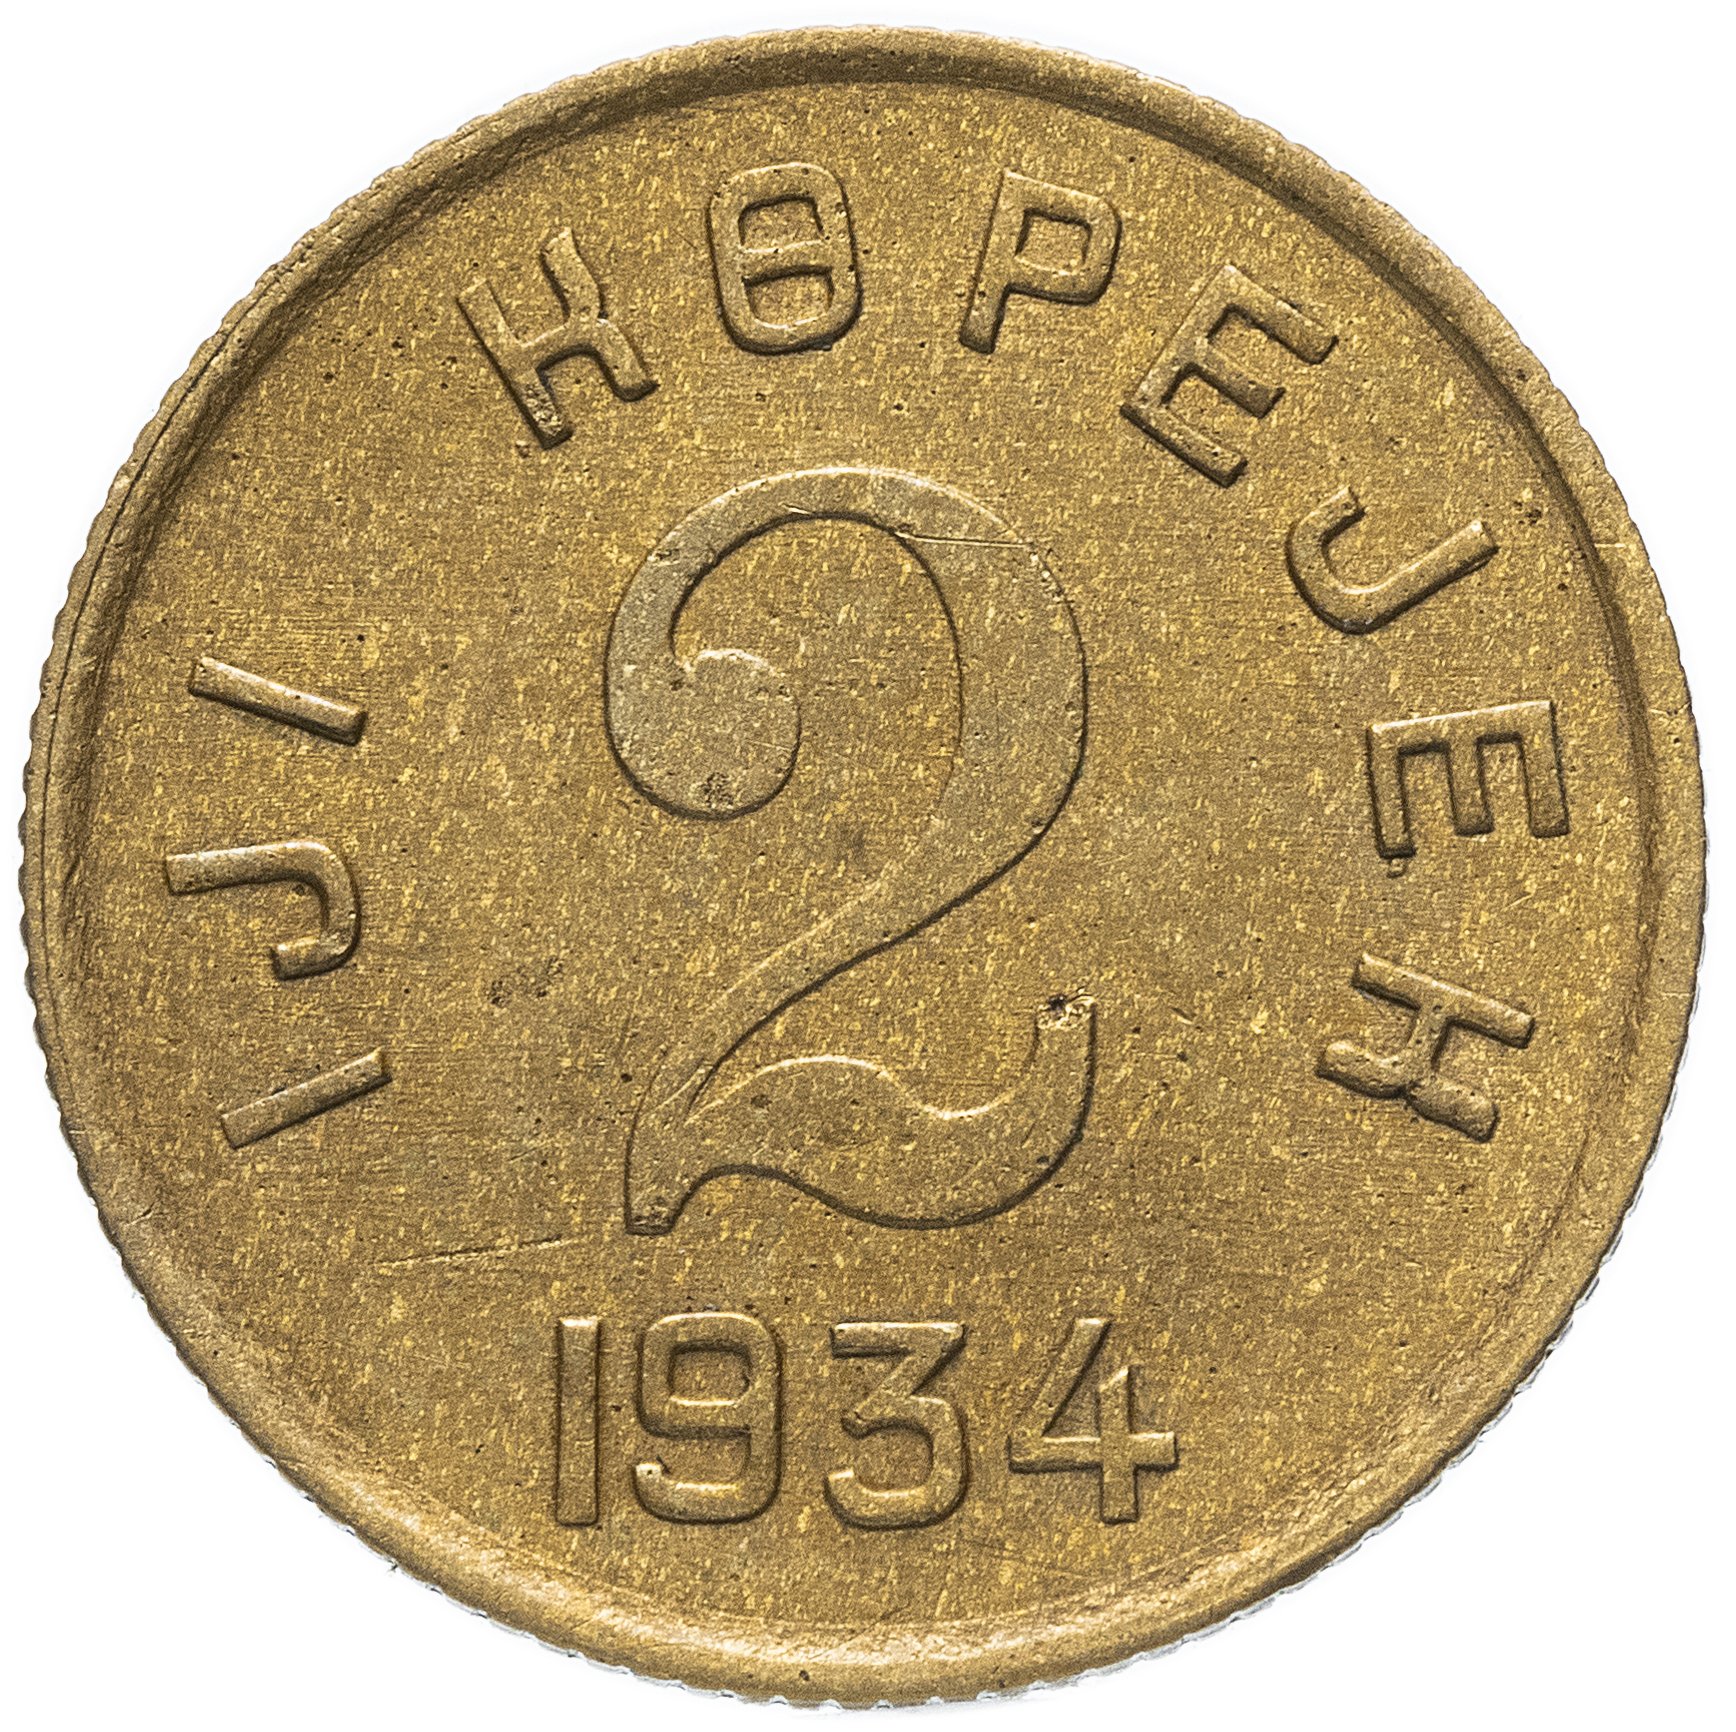 Gramm coin цена. Монета 1934 года. Оцинкованные монеты. Польша локальные выпуски монет.